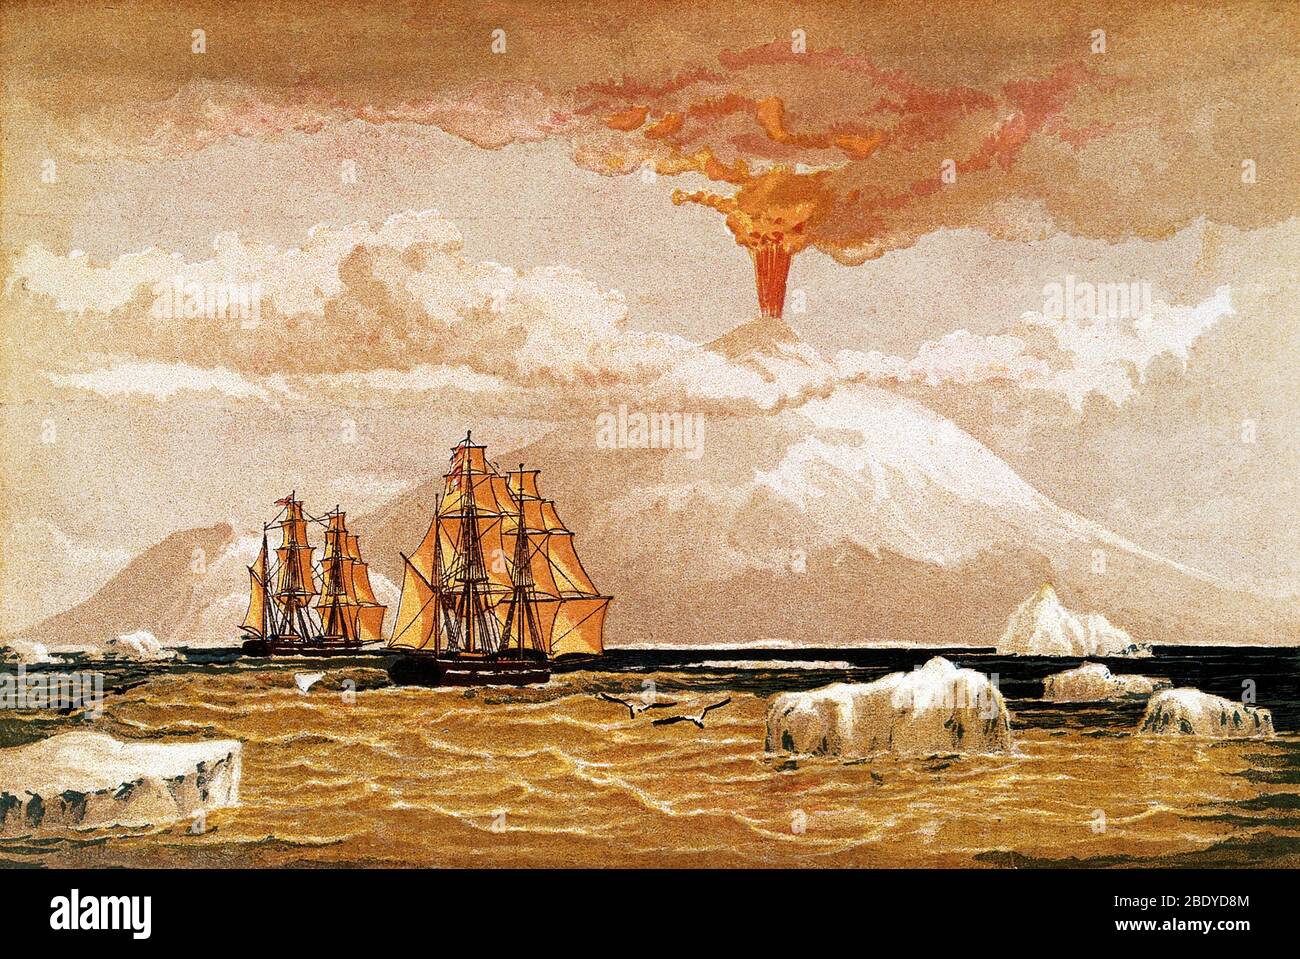 Monte Erebus, Antartide: Il vulcano in eruzione. Chromolitografia da 1868. Il Monte Erebus fu scoperto il 27 gennaio 1841 (e si osservò in eruzione) dall'esploratore polare Sir James Clark Ross che lo nominò e il suo compagno, il Monte Terrore, dopo le sue navi, Erebus e Terrore. Presente con Ross sull'Erebus era il giovane Joseph Hooker, futuro presidente della Royal Society. Il Monte Erebus è il vulcano attivo più a sud della terra e il vulcano più attivo dell'Antartide, con un'altitudine di 3,794 metri (12,448 piedi). Si trova sull'Isola di Ross. Foto Stock